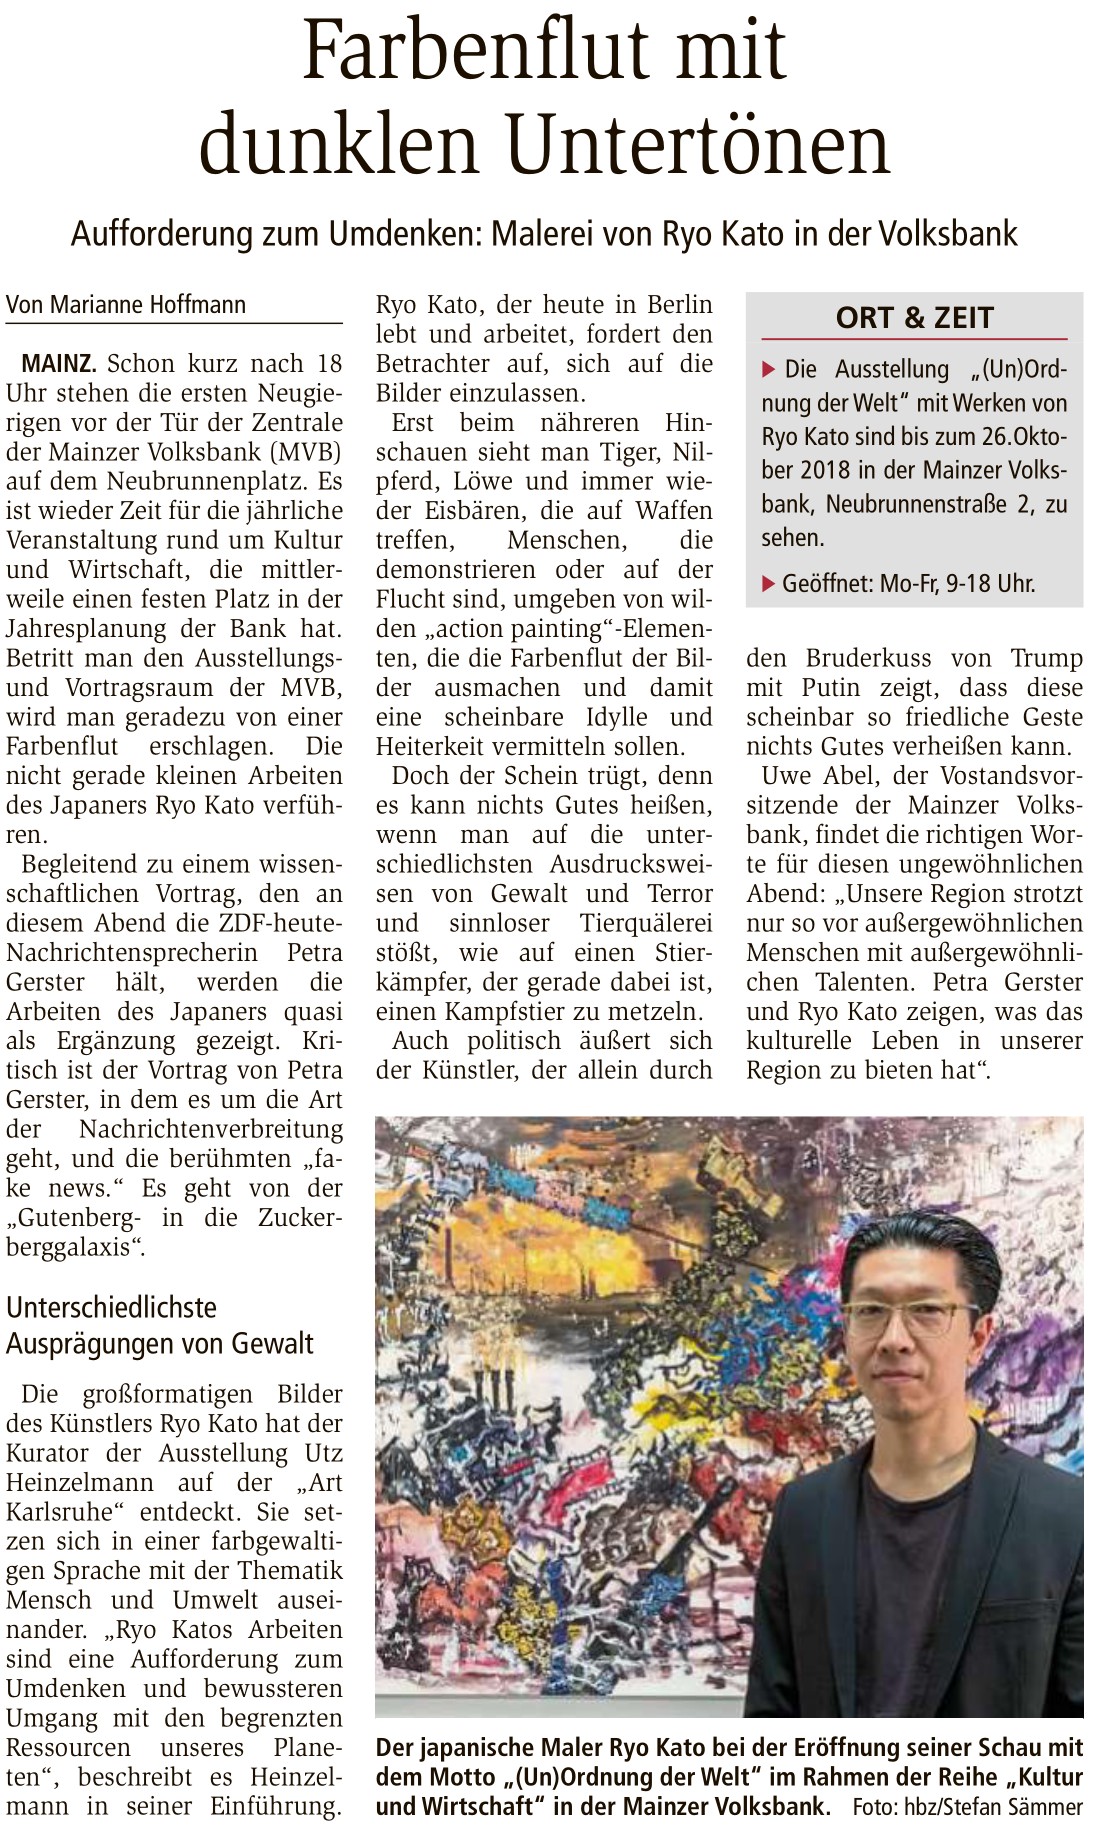 2018-09-21_Allgemeine_Zeitung_Mainz_Farbenflut_mit_dunklen_Untertoenen-2